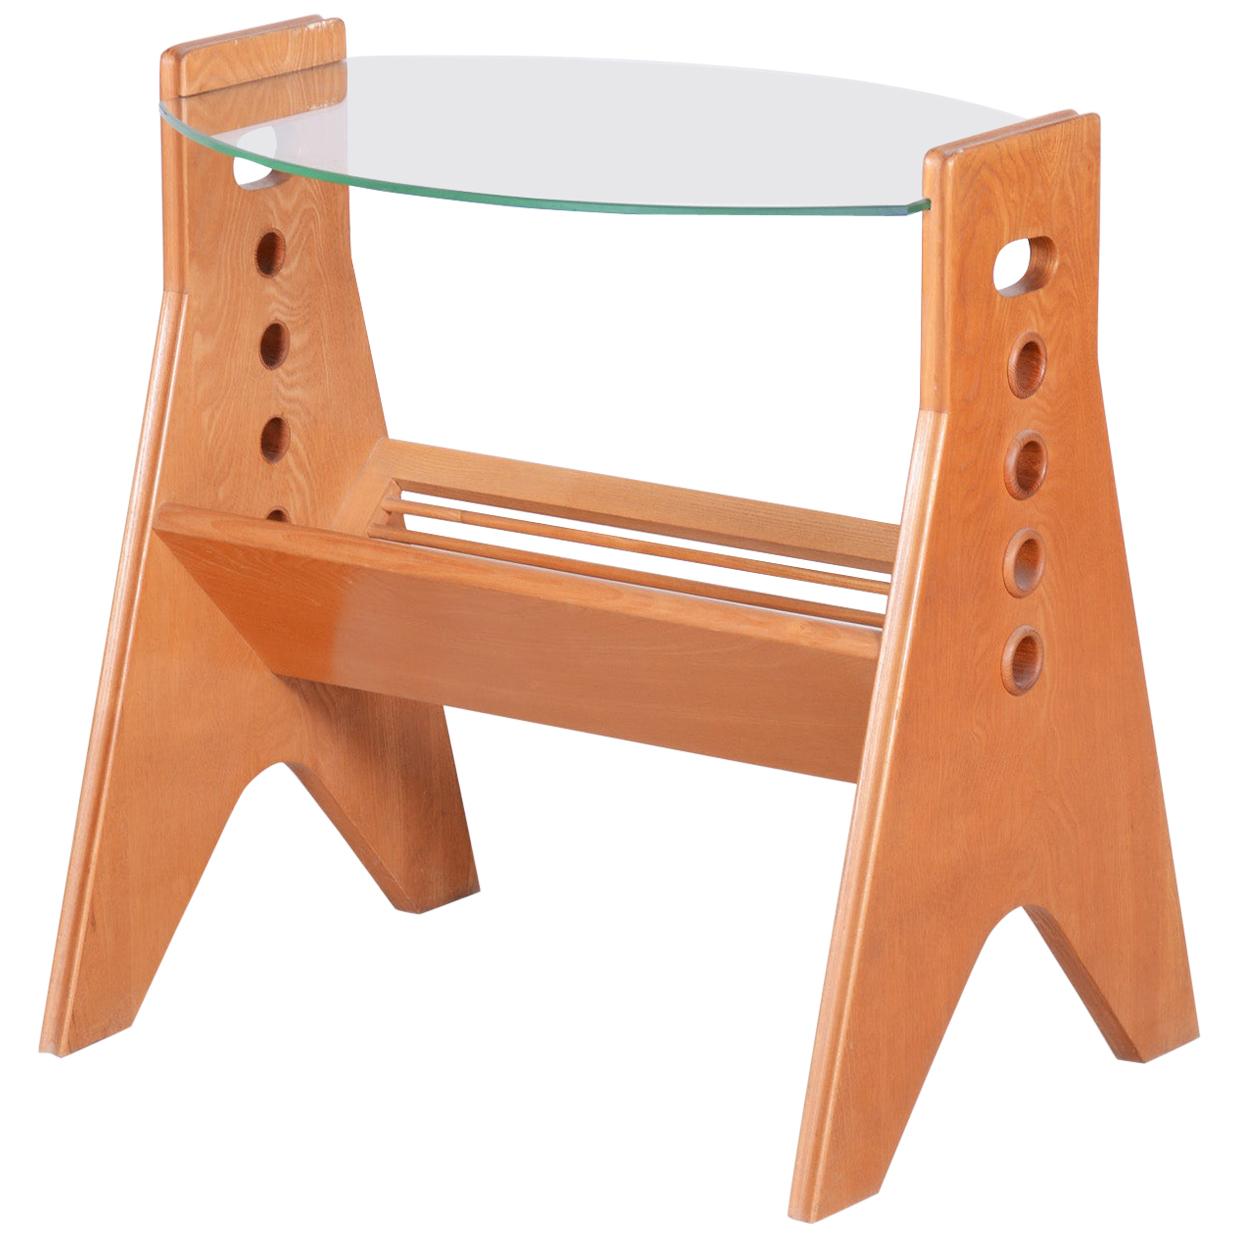 Table basse en frêne d'origine, de style moderne du milieu du siècle dernier, fabriquée dans les années 1950 par LUV Workshop